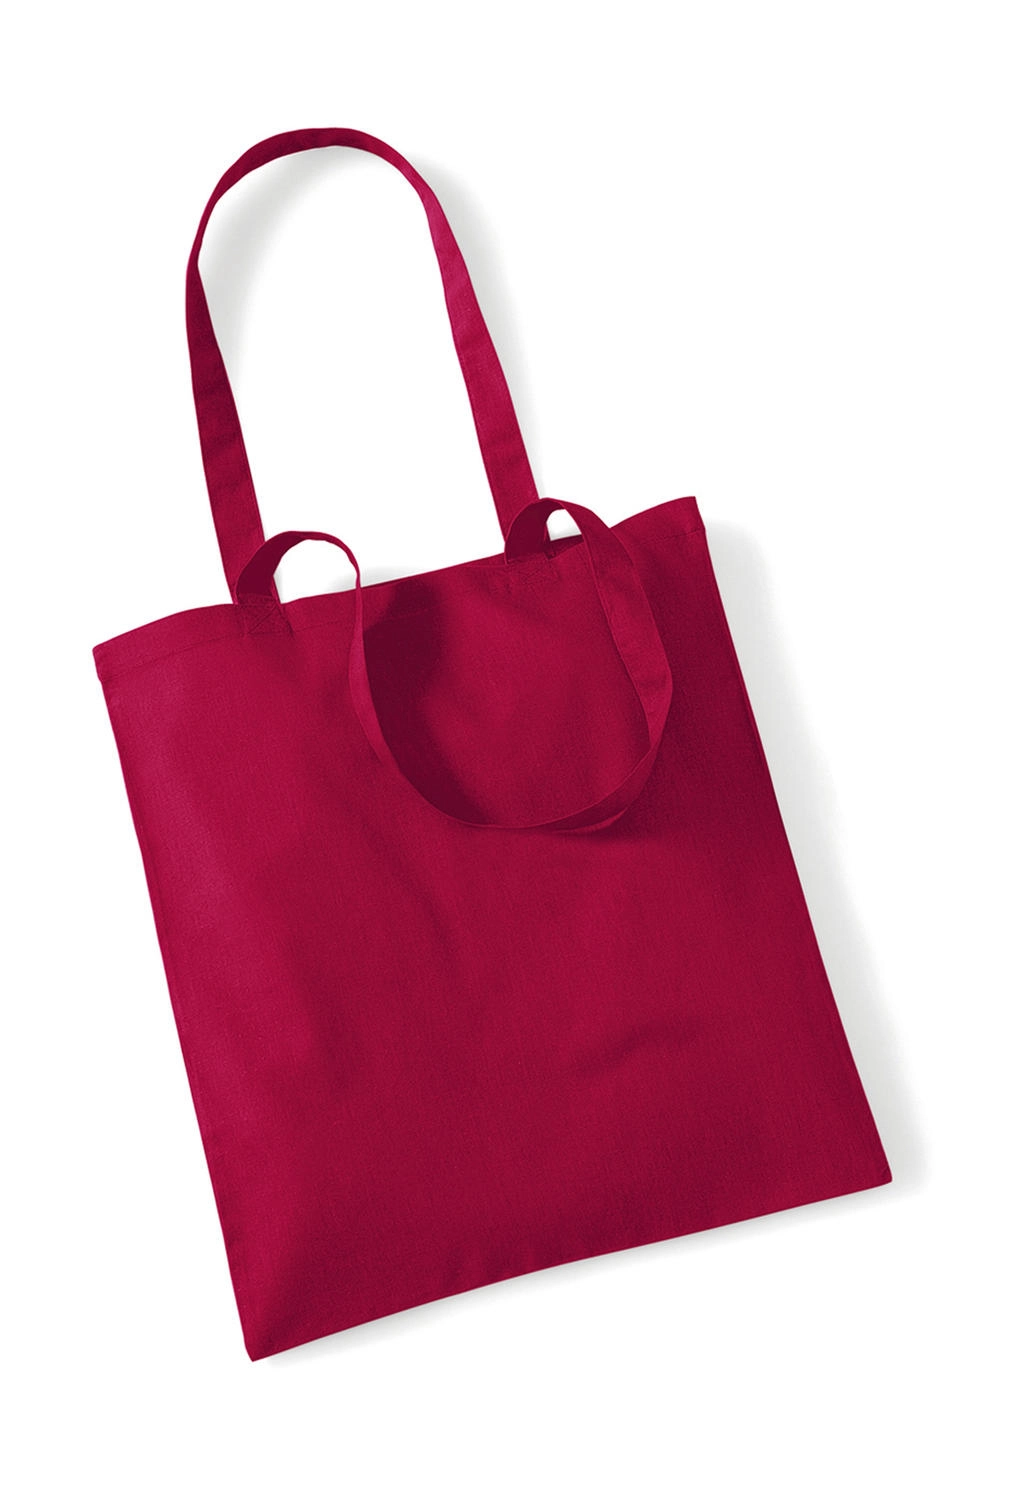 Bag for Life - Long Handles zum Besticken und Bedrucken in der Farbe Cranberry mit Ihren Logo, Schriftzug oder Motiv.